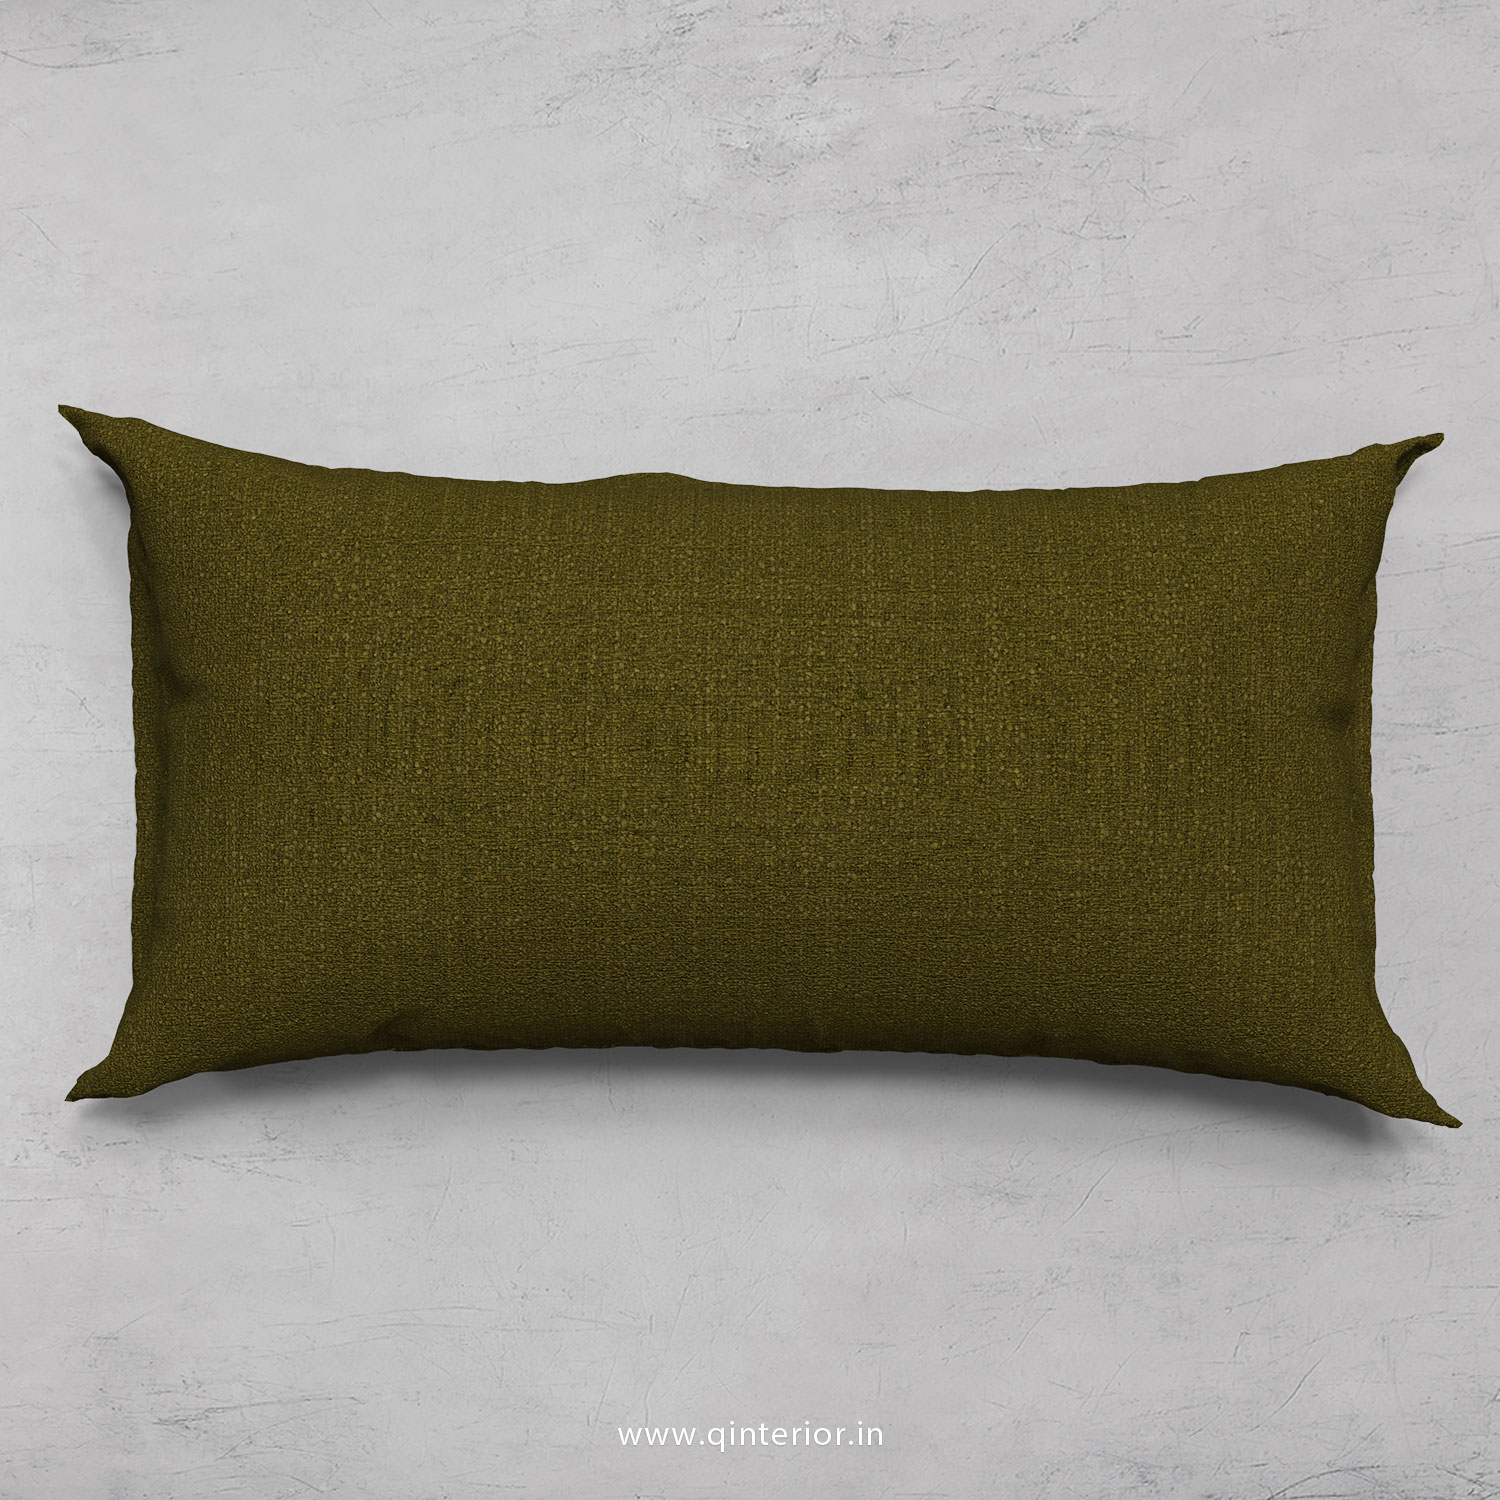 Cushion With Cushion Cover in Cotton Plain - CUS002 CP18